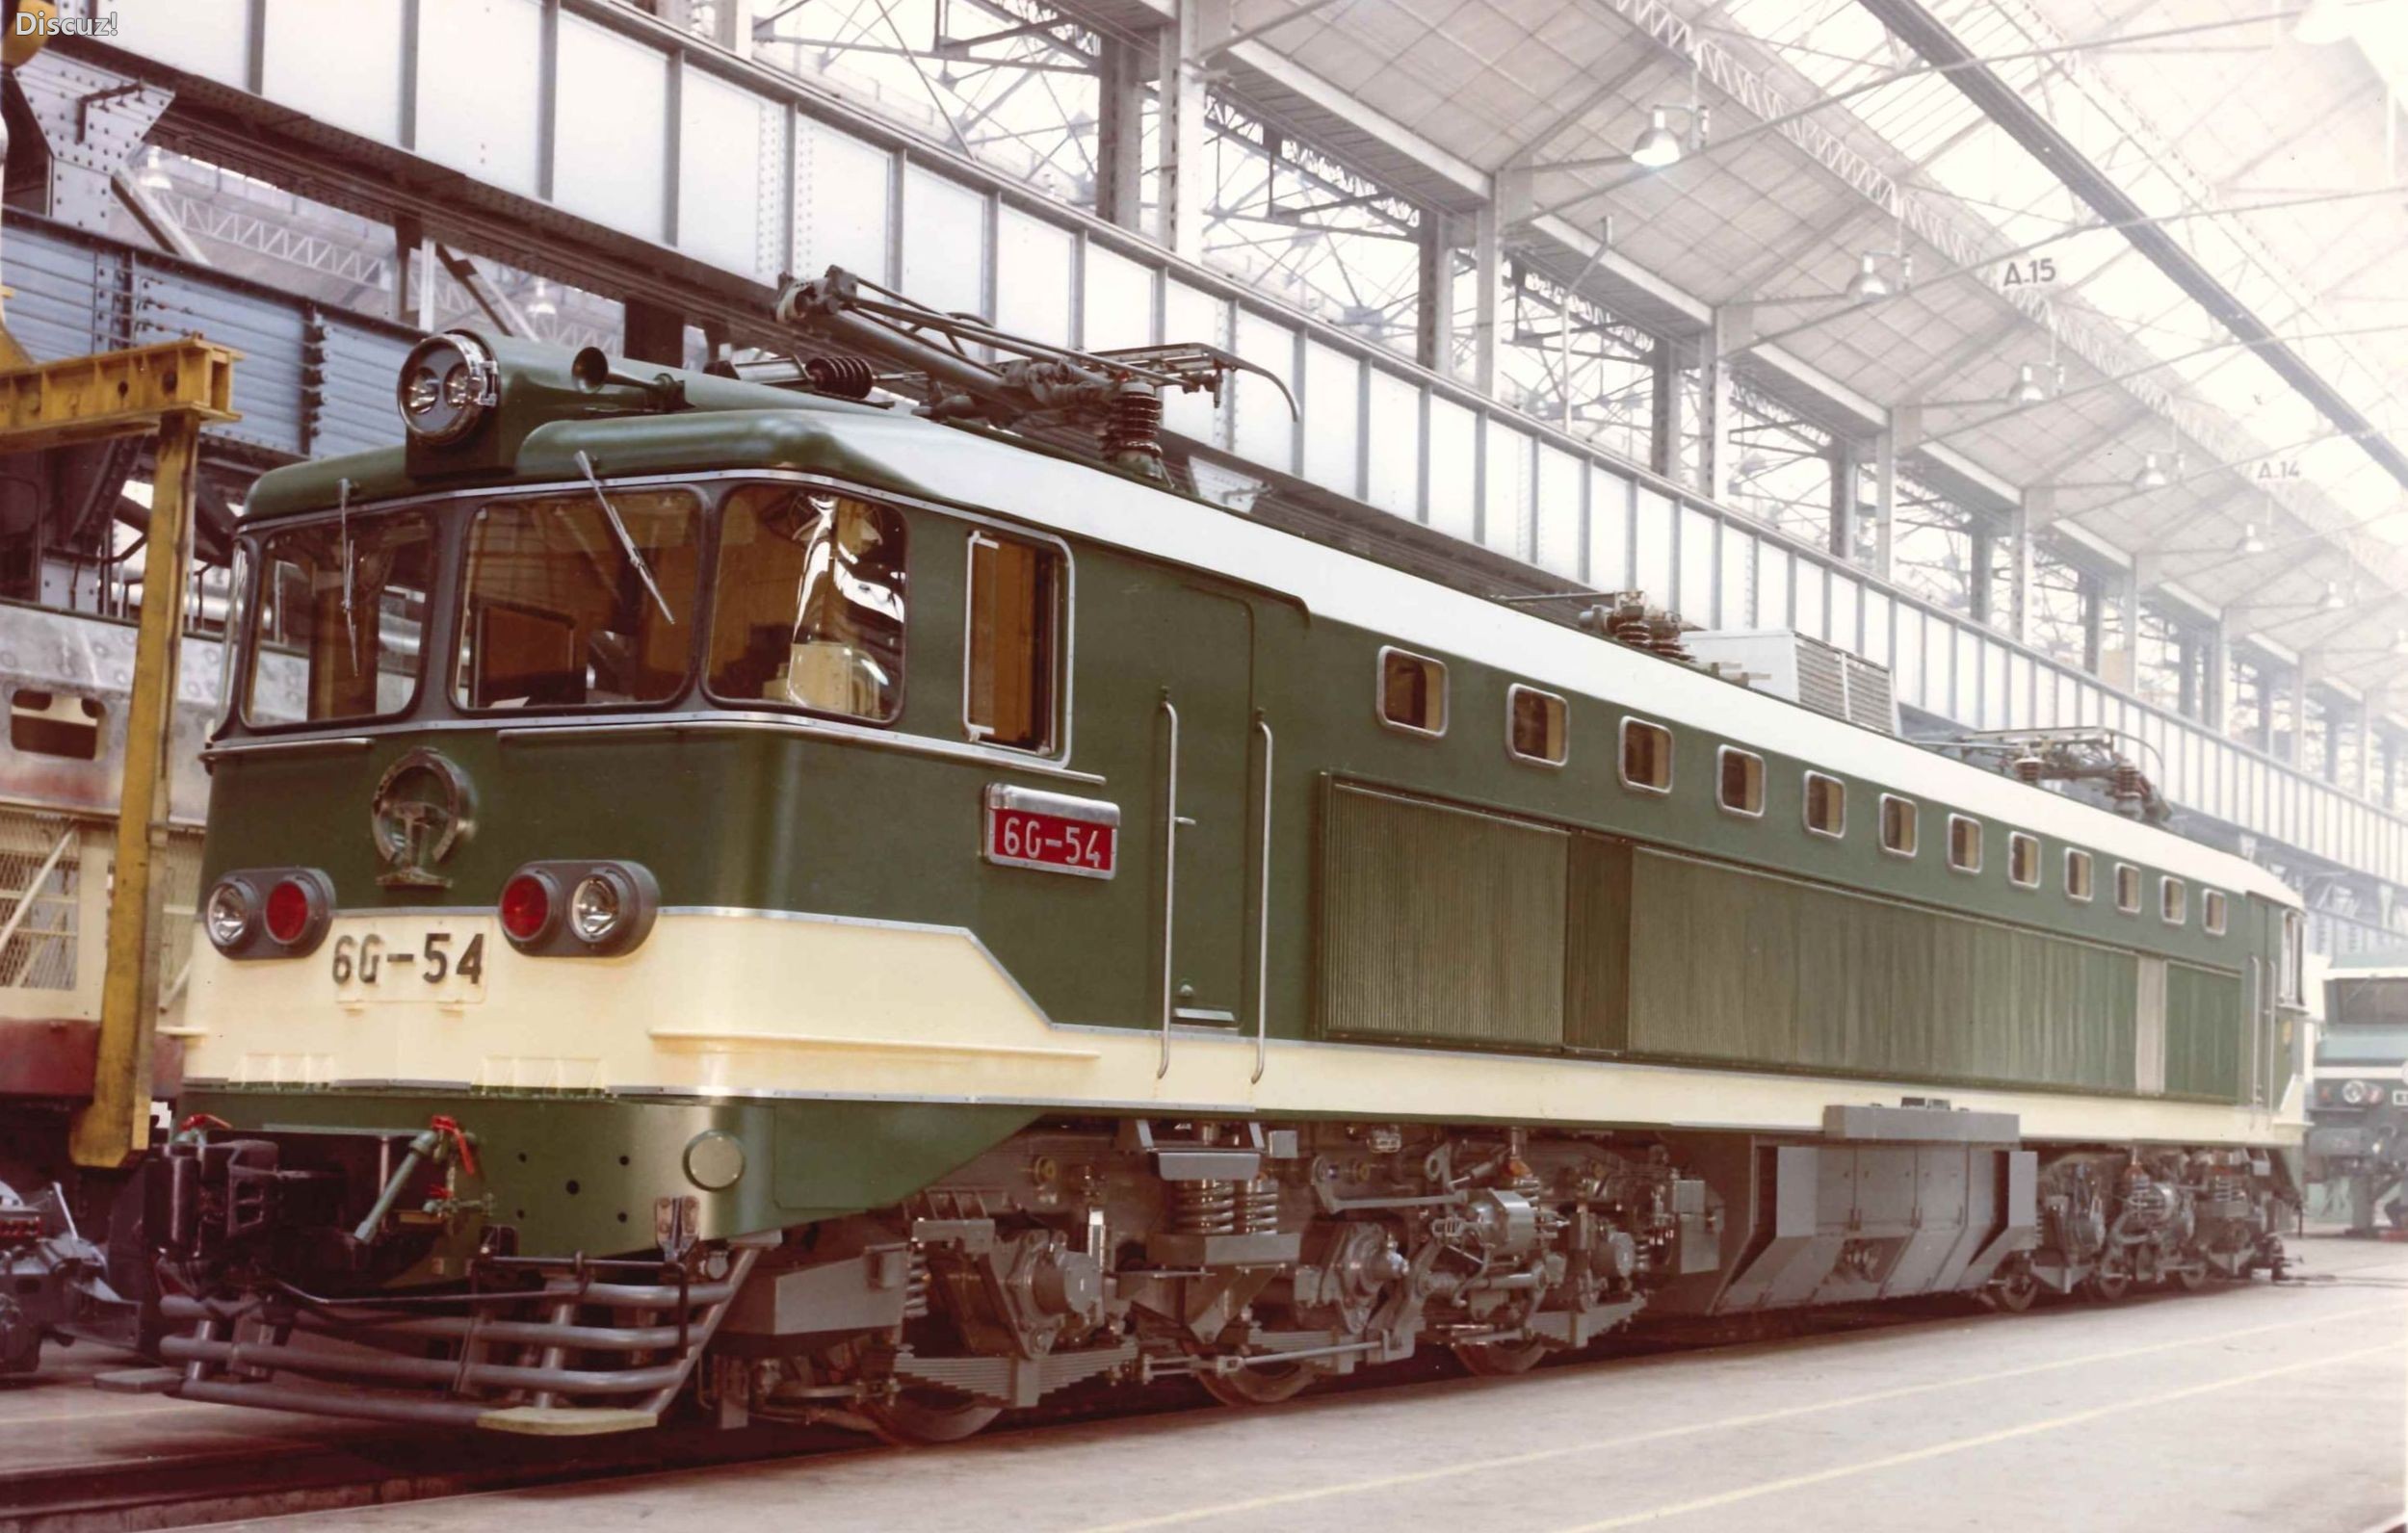 【火车科普贴】s01e08:宝成铁路上的法国两兄弟——法国6y2型6g型电力